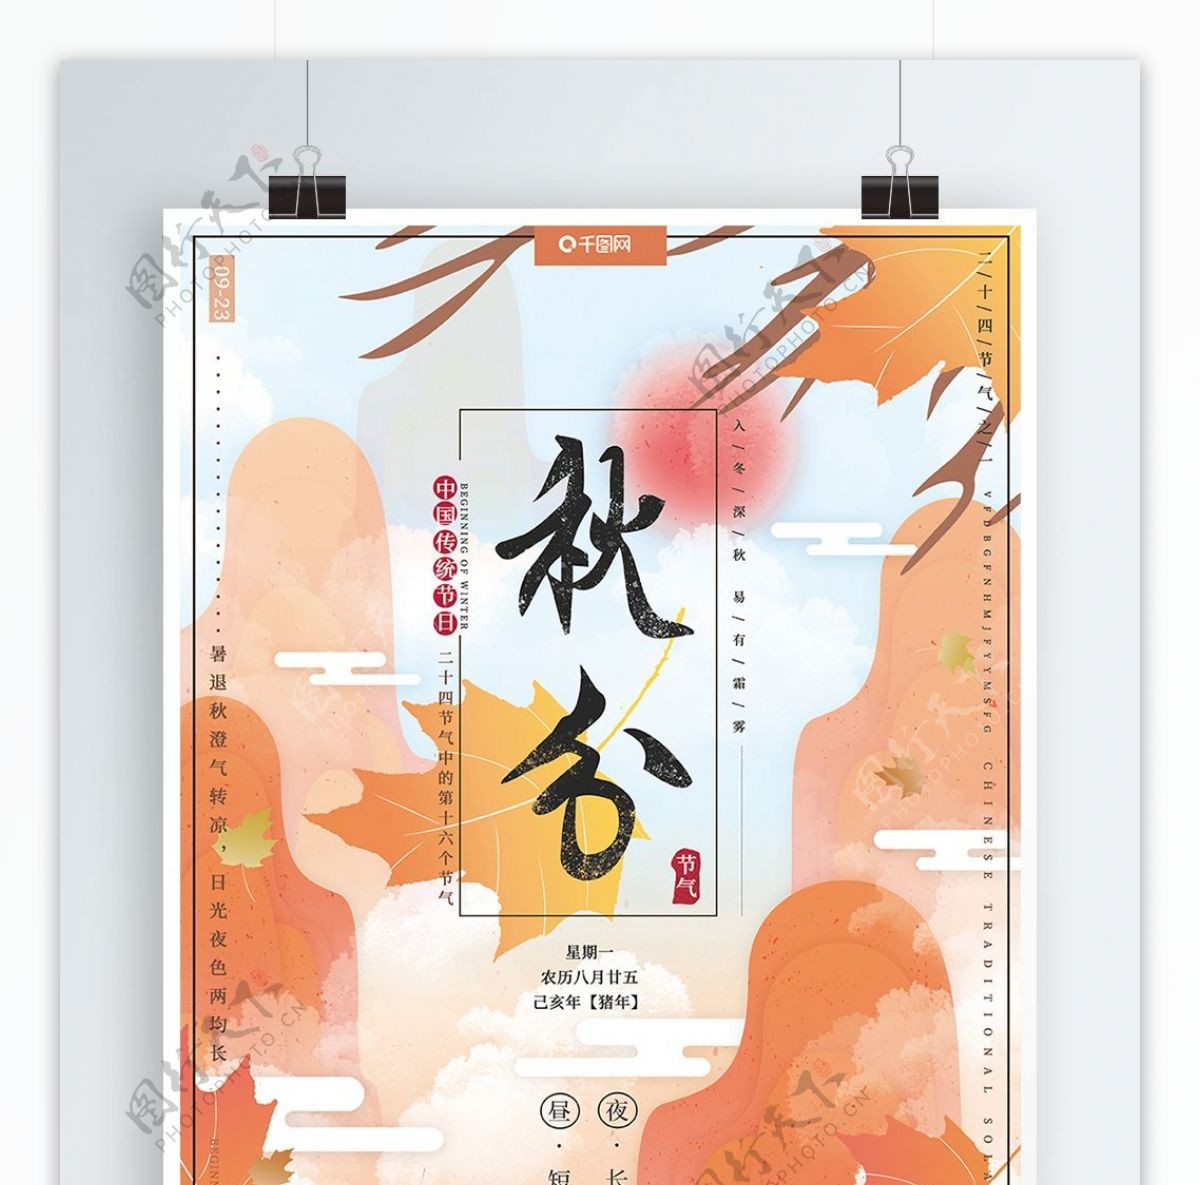 原创手绘剪纸风二十四传统节气秋分节日海报